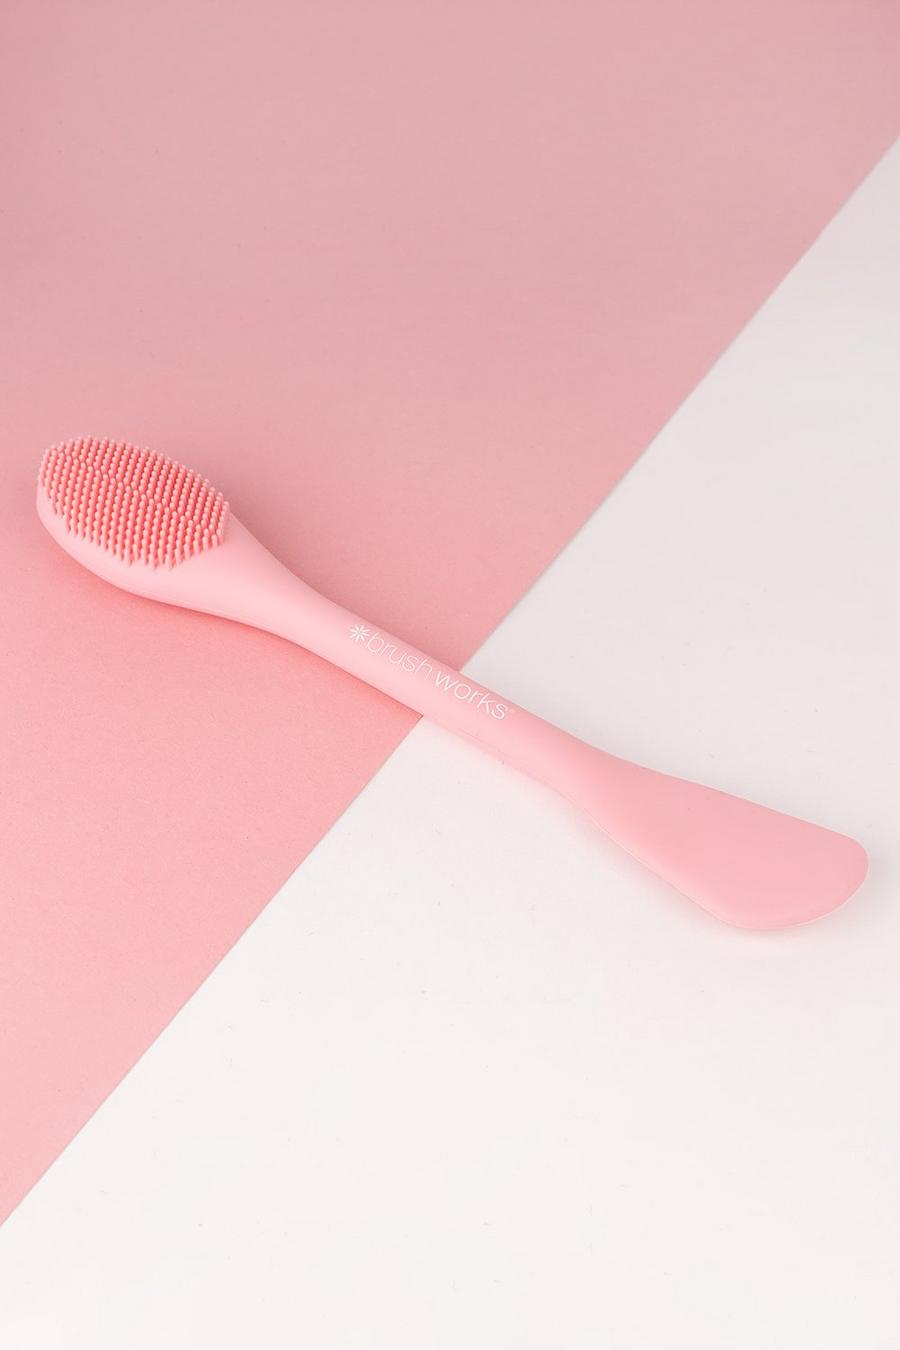 Brushworks - Applicateur de masque , Baby pink rose